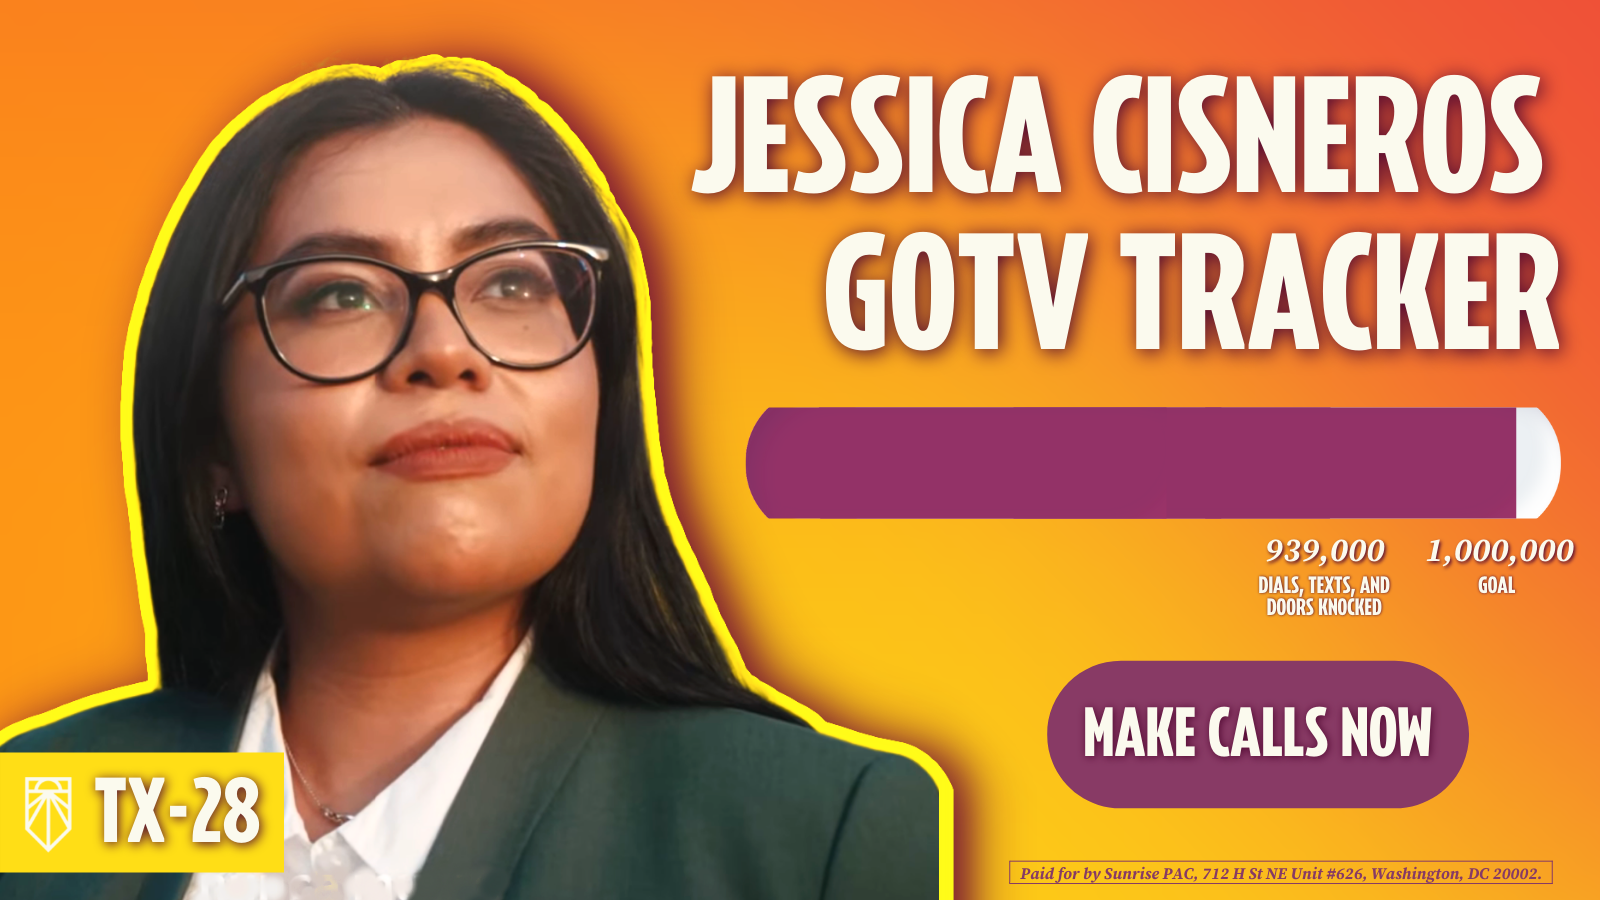 Jessica Cisneros GOTV Tracker - 939,000 pogingen tot kiezerscontacten, 1,000,000 doel - Bellen. Betaald door Sunrise PAC, 712 H St NE Unit #626, Washington, DC 20002.